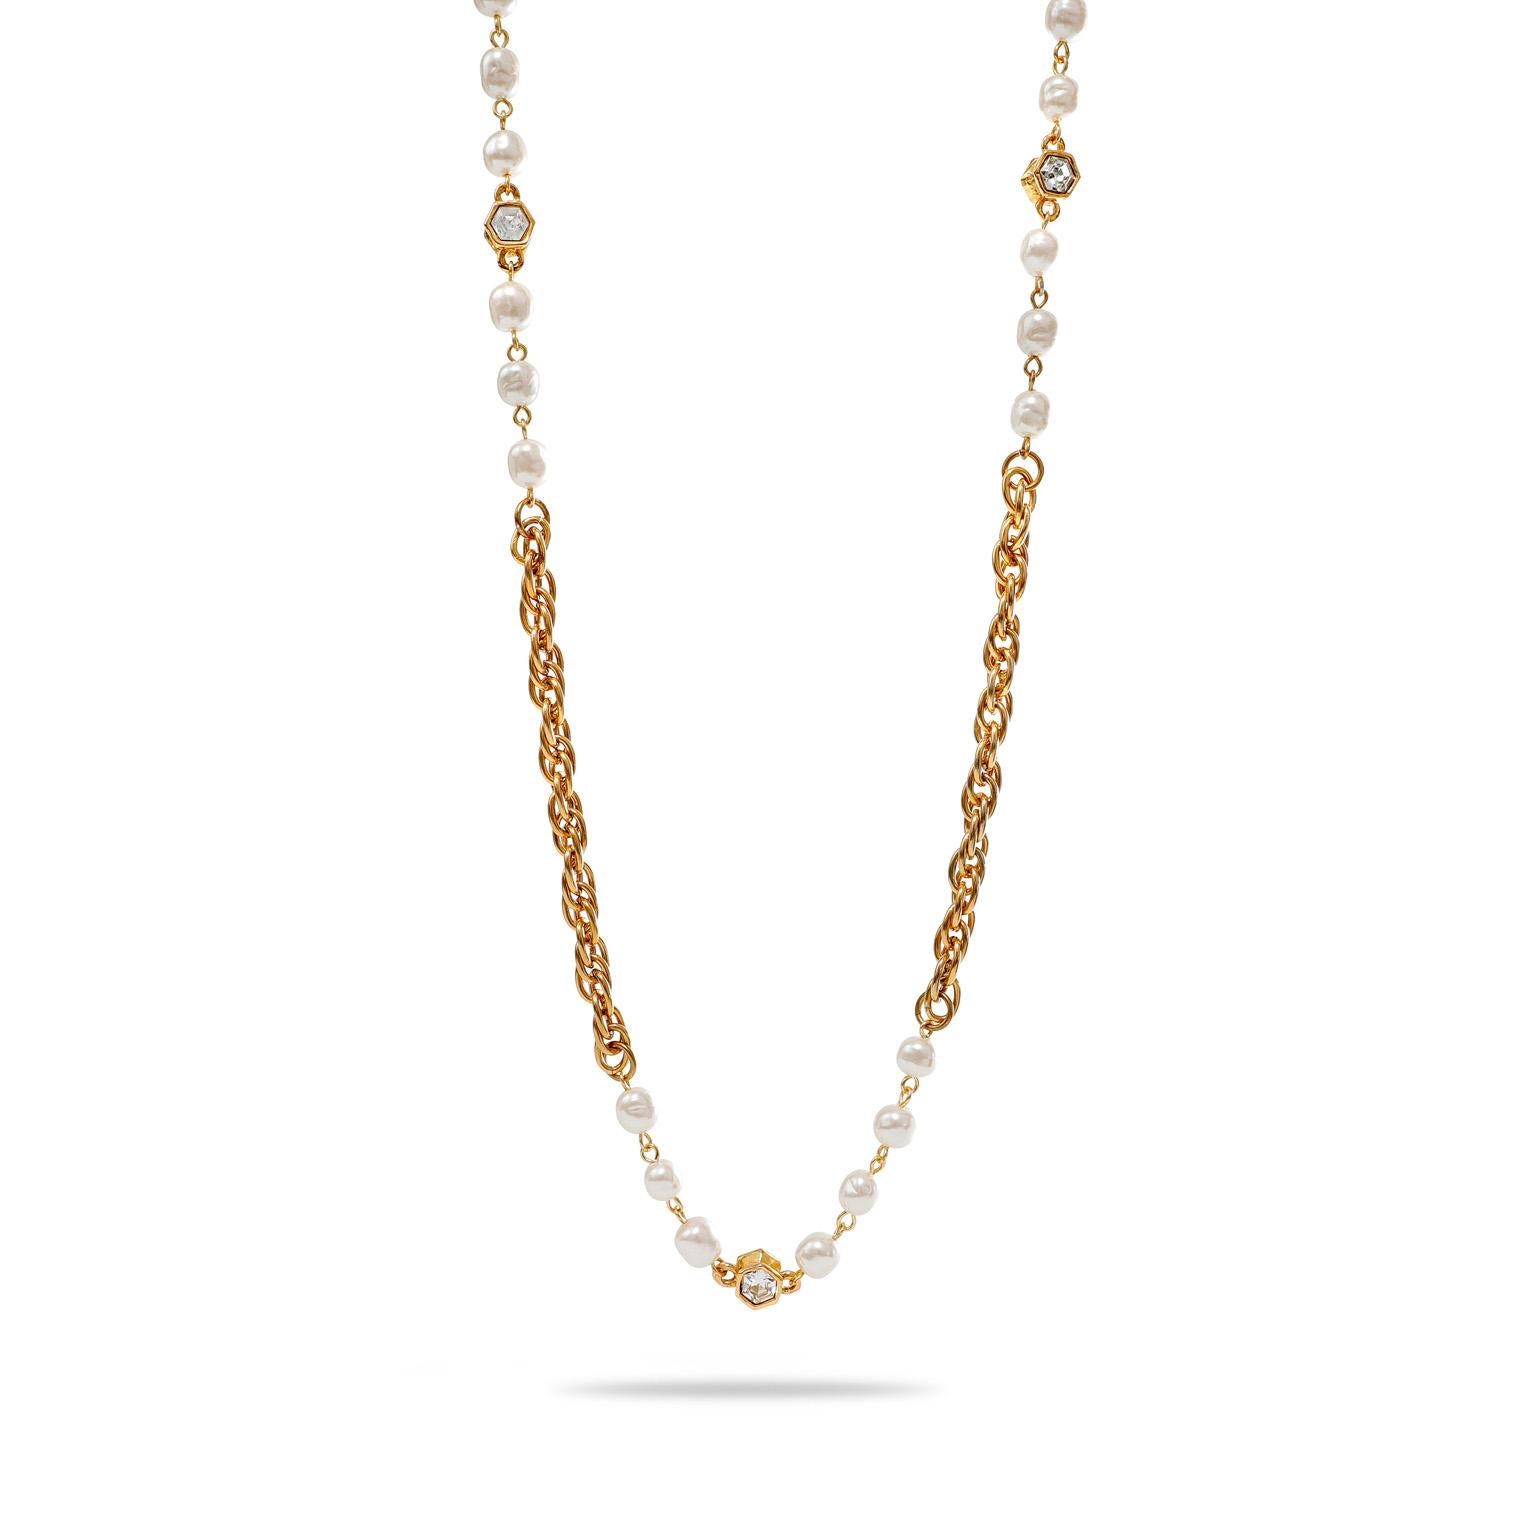 Diese authentische Chanel Perle und Strass Halskette ist in ausgezeichnetem Vintage-Zustand aus den 1970er Jahren.  24 Karat vergoldete Gliederkette mit weißen Barockperlen und sechseckig gefassten Strasskristallen.   Ungefähr 24 Zoll.   